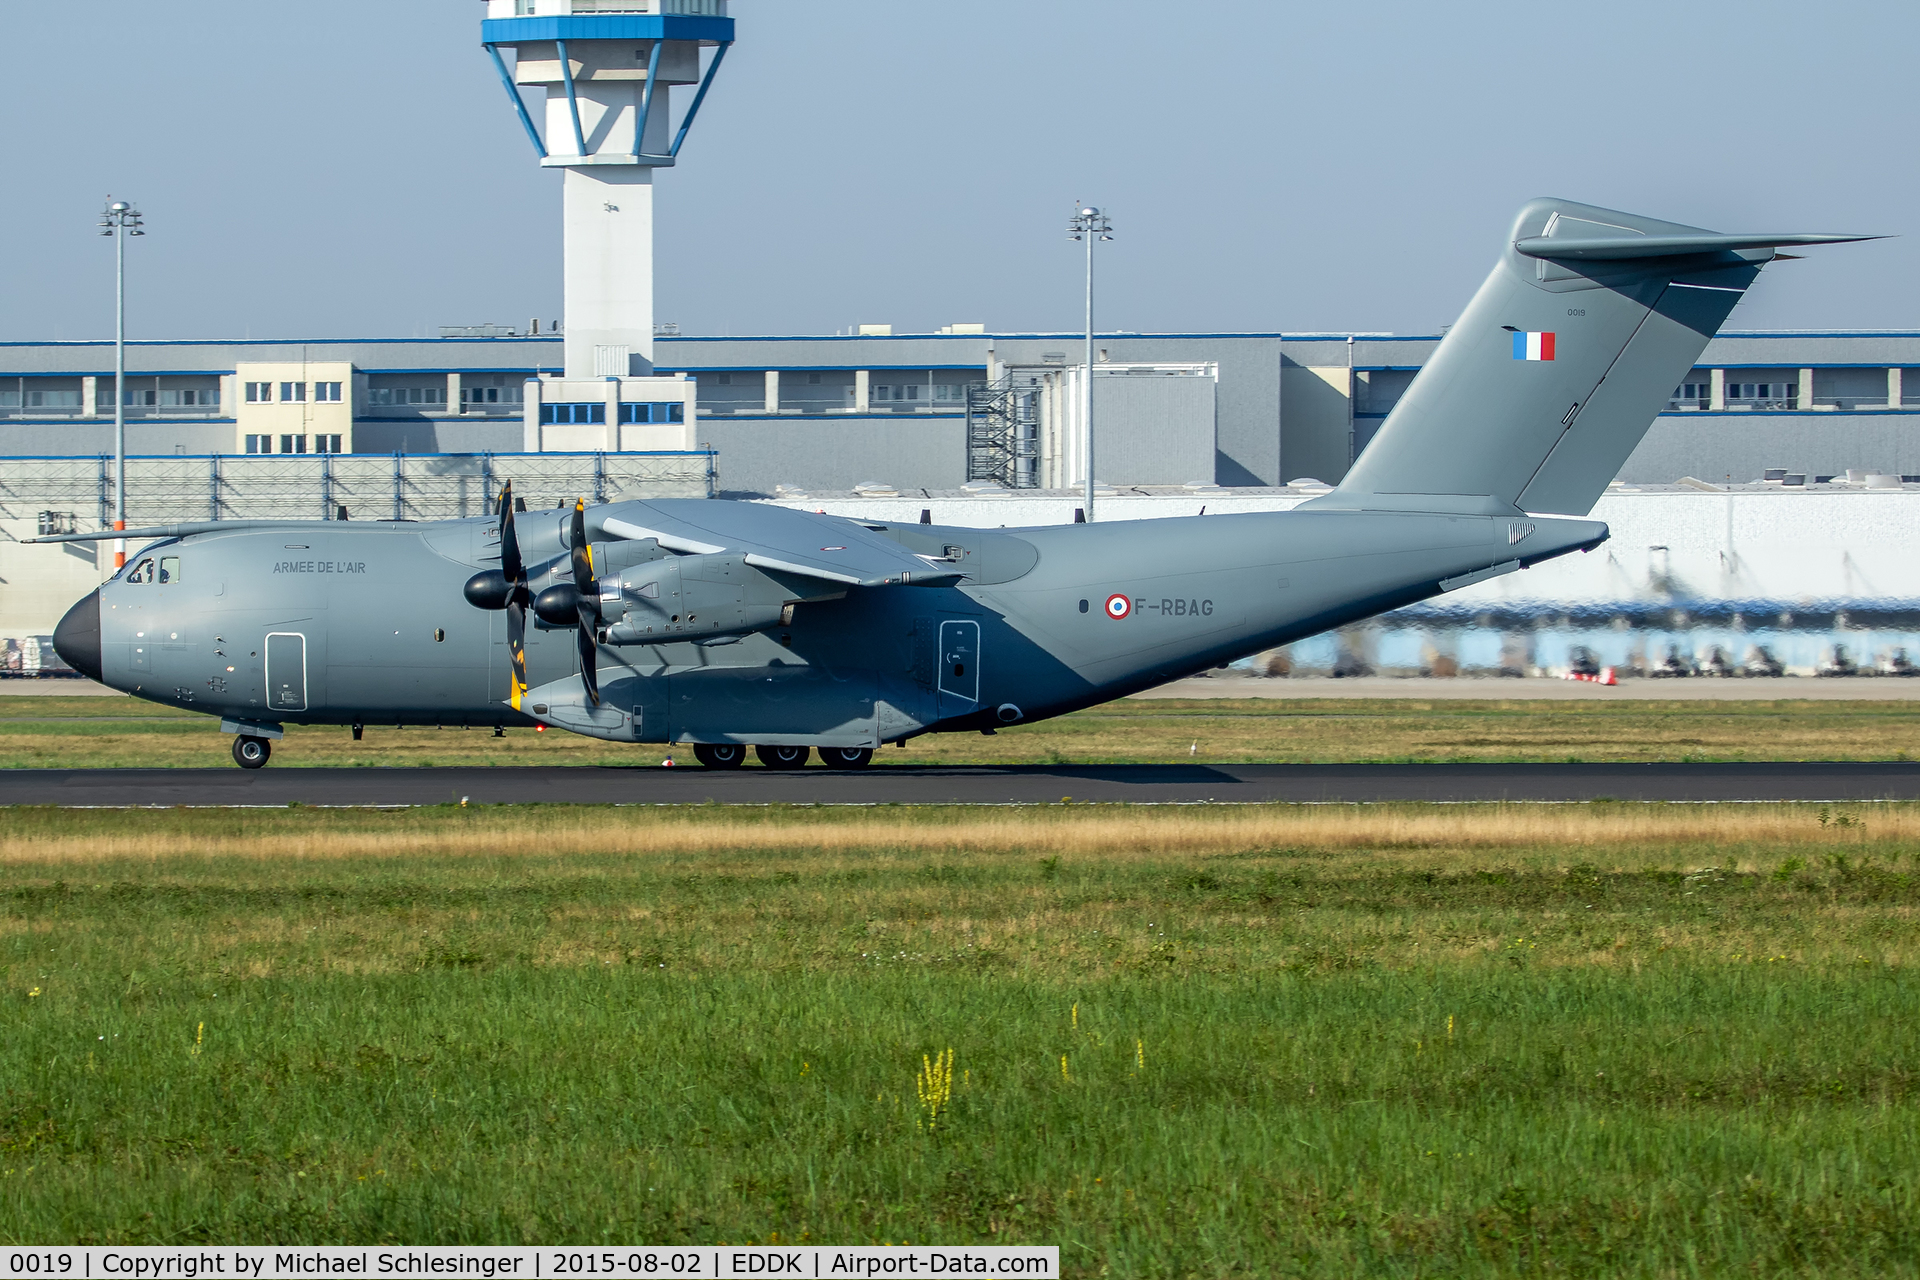 0019, 2015 Airbus A400M Atlas C/N 019, 0019/F-RBAG - Airbus A400M Atlas - Armée de l'Air (French Air Force)